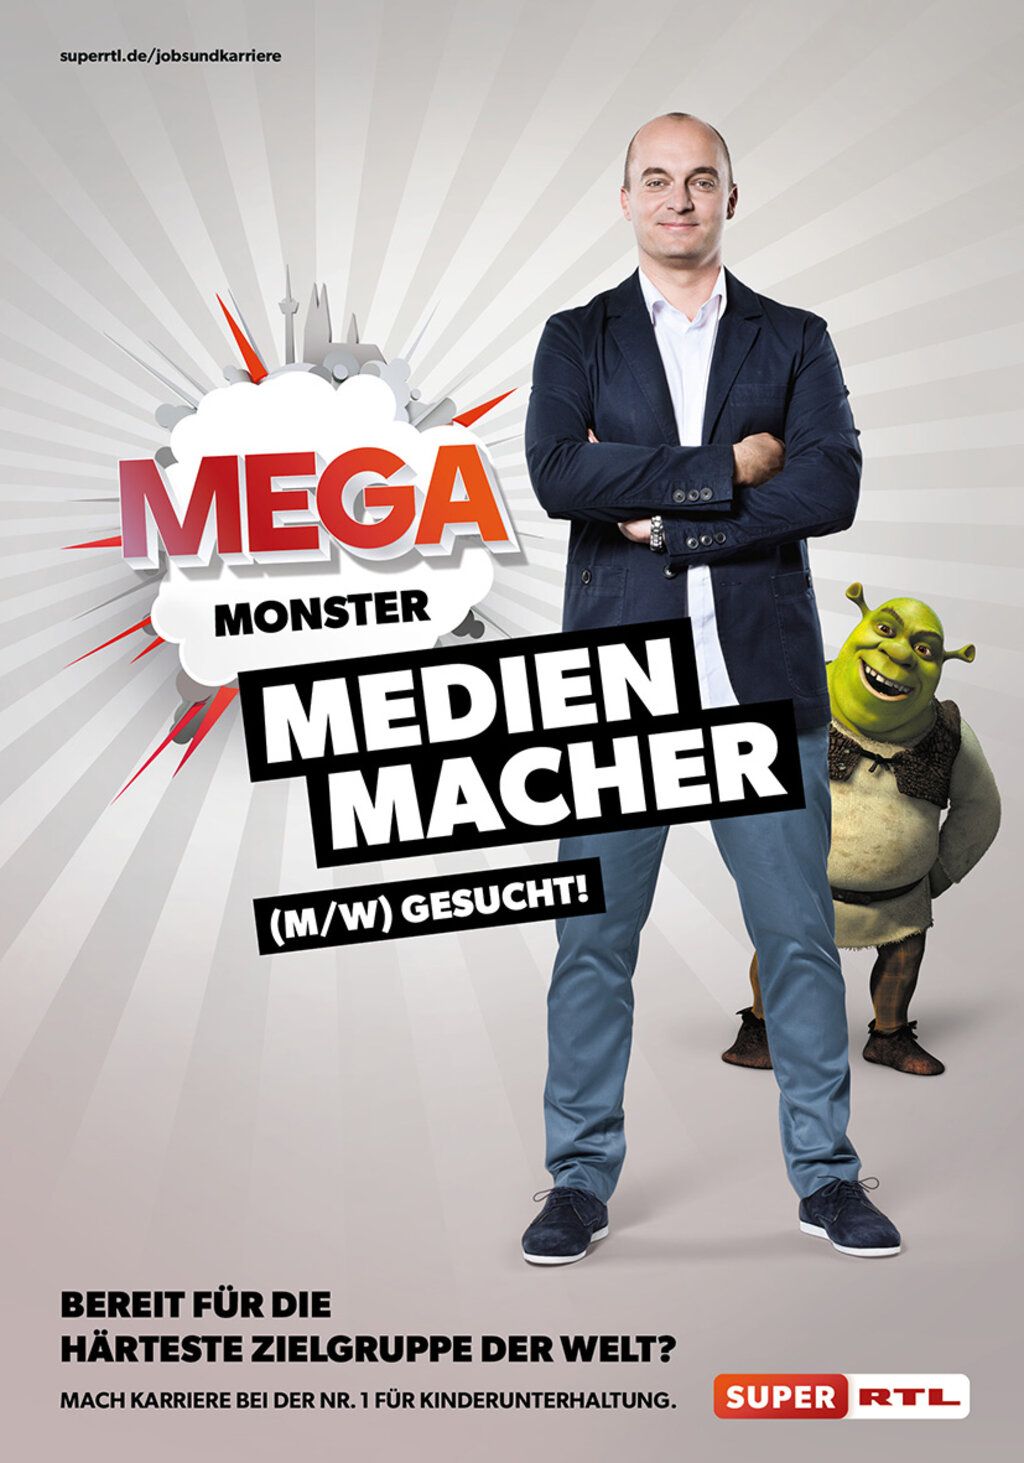 Junger Man mit Jacket und Jeans wirbt für einen Job bei SUPER RTL. Text: Mega-Monster-Medien-Macher.